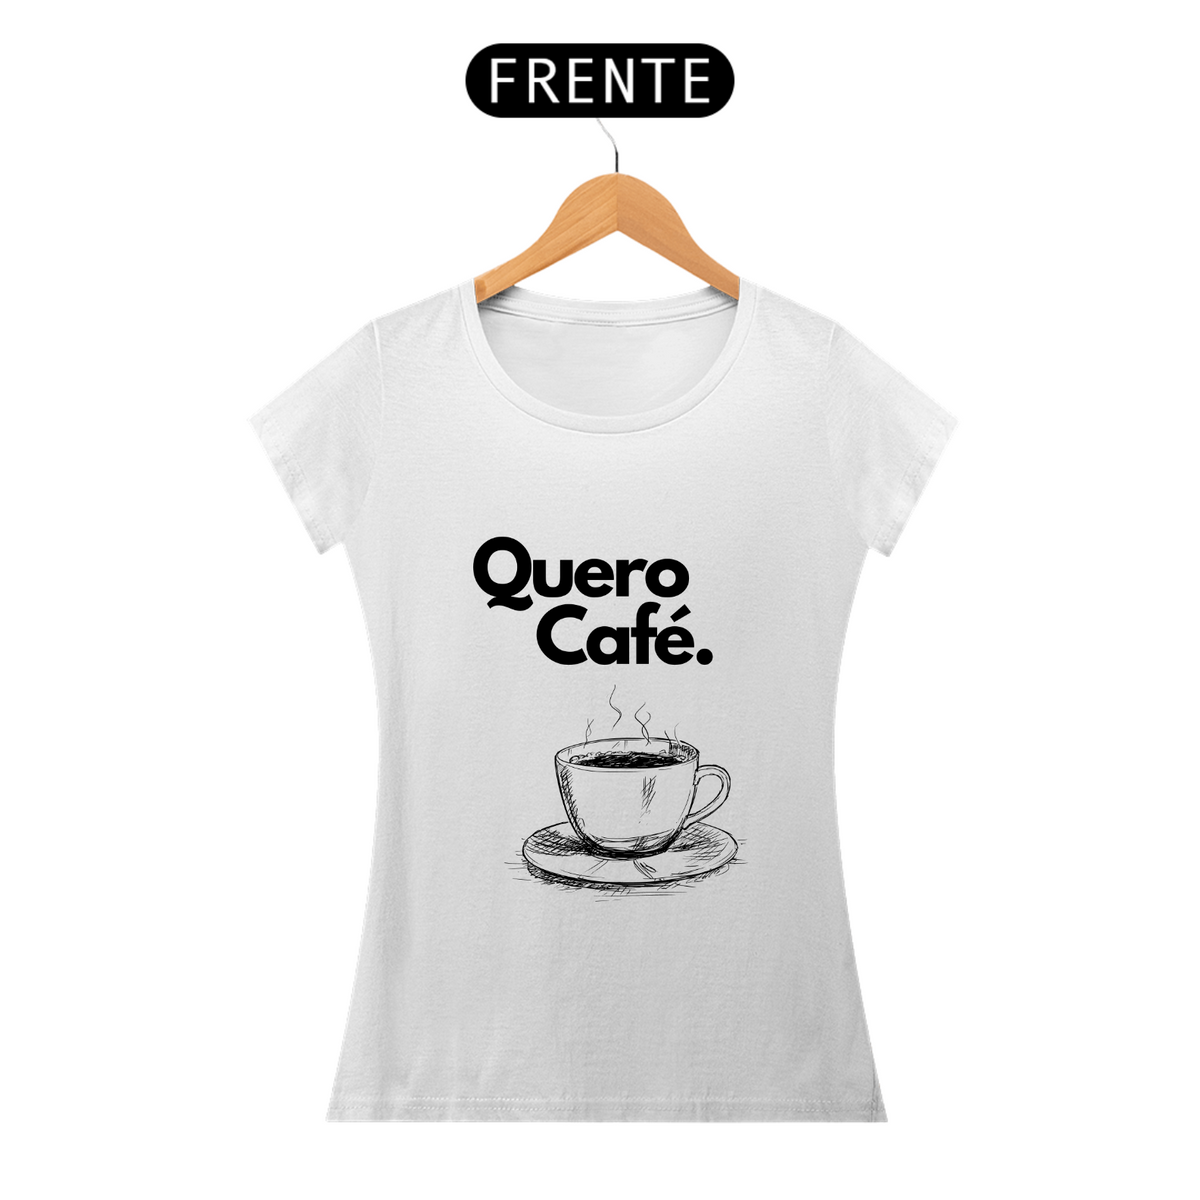 Nome do produto: Quero Café Baby look - Coffe t shirt